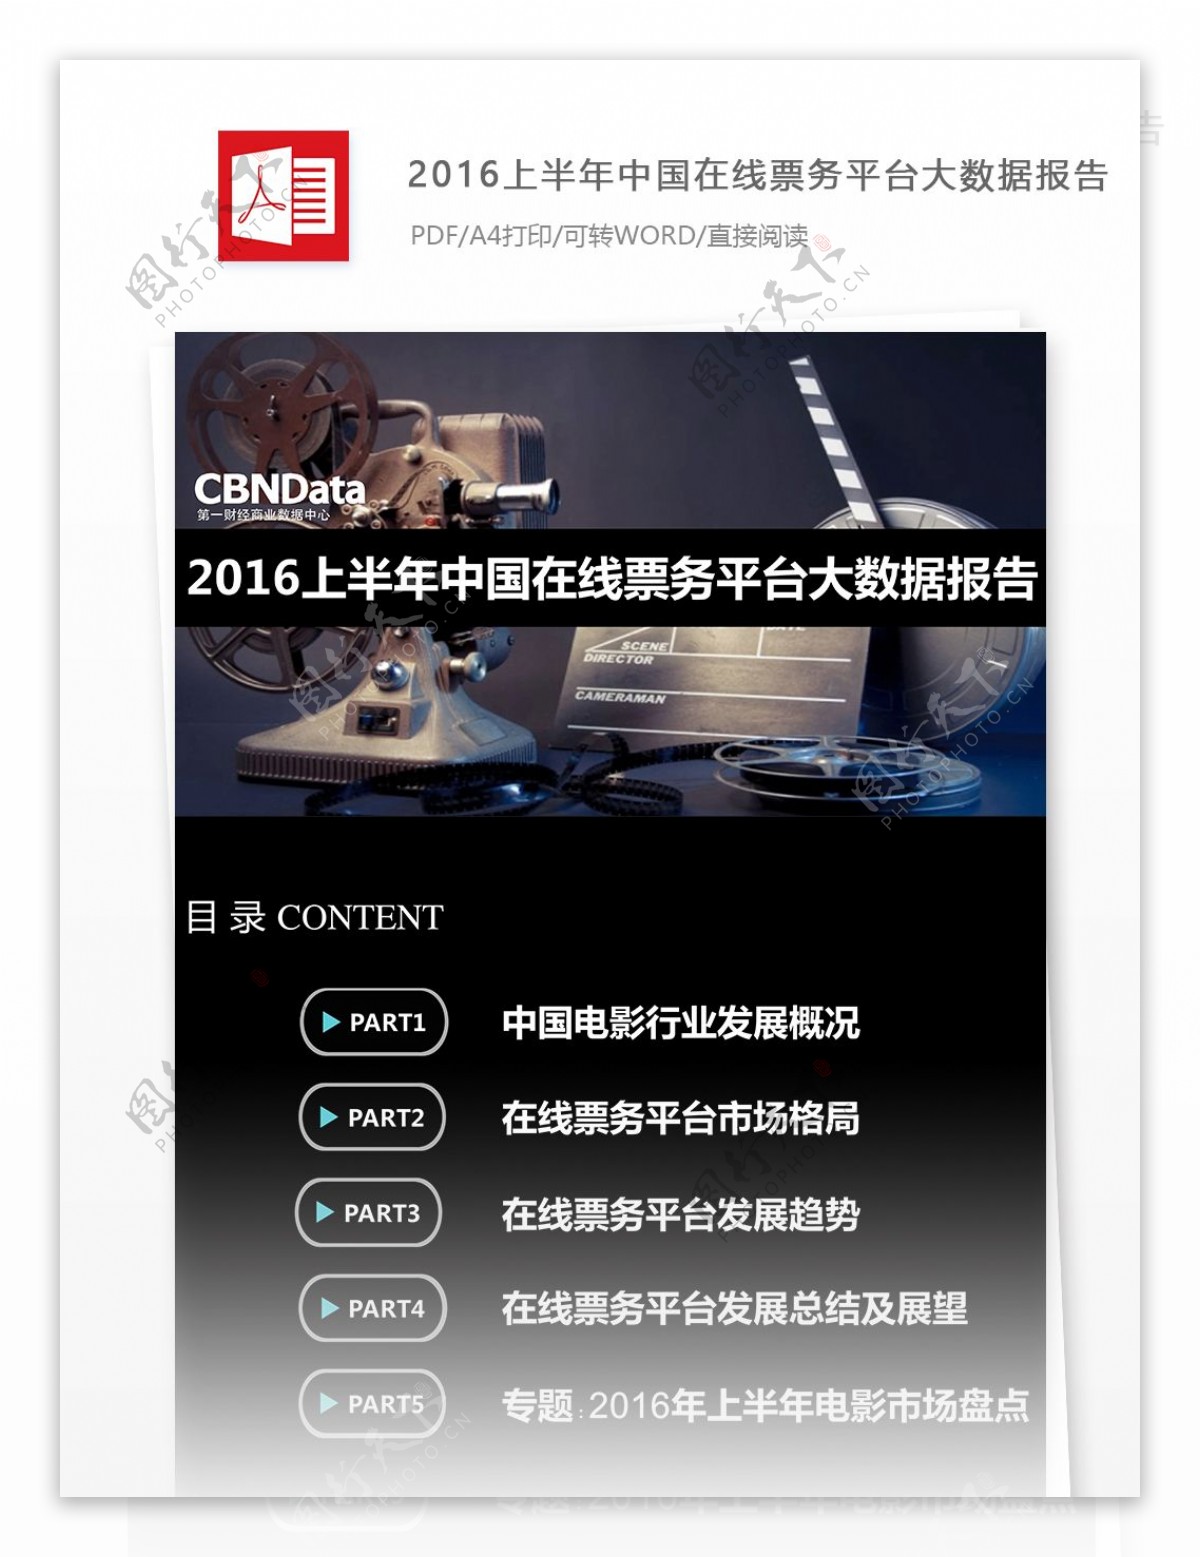 推荐上半年中国在线票务平台大数据可行性分析报告